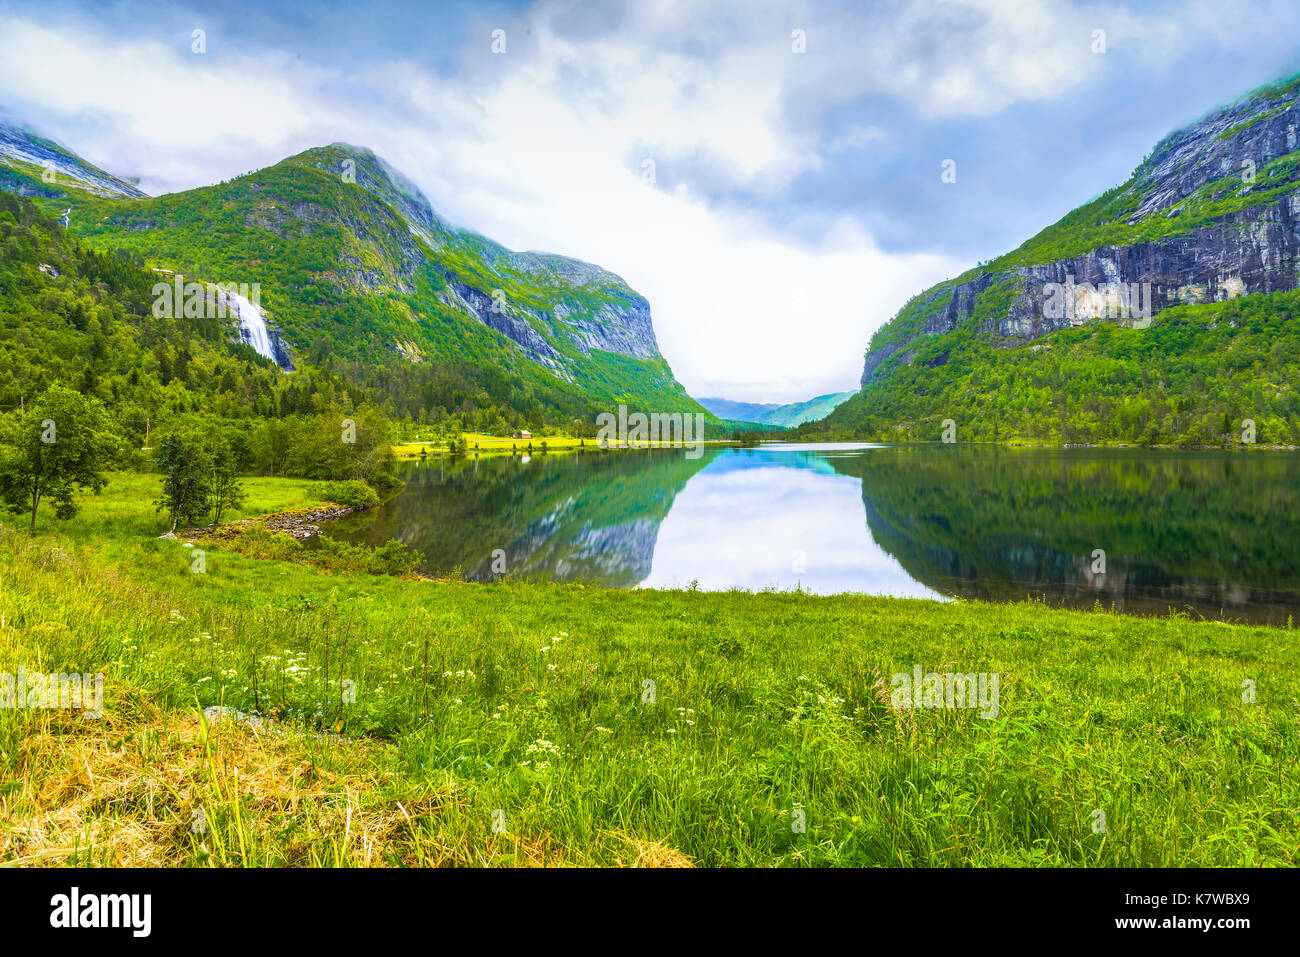 Le Brun le lac avec la réflexion de la montagne et Espelandfalls, Francine Richard Valley, comté de Hordaland, Norvège, Scandinavie Banque D'Images